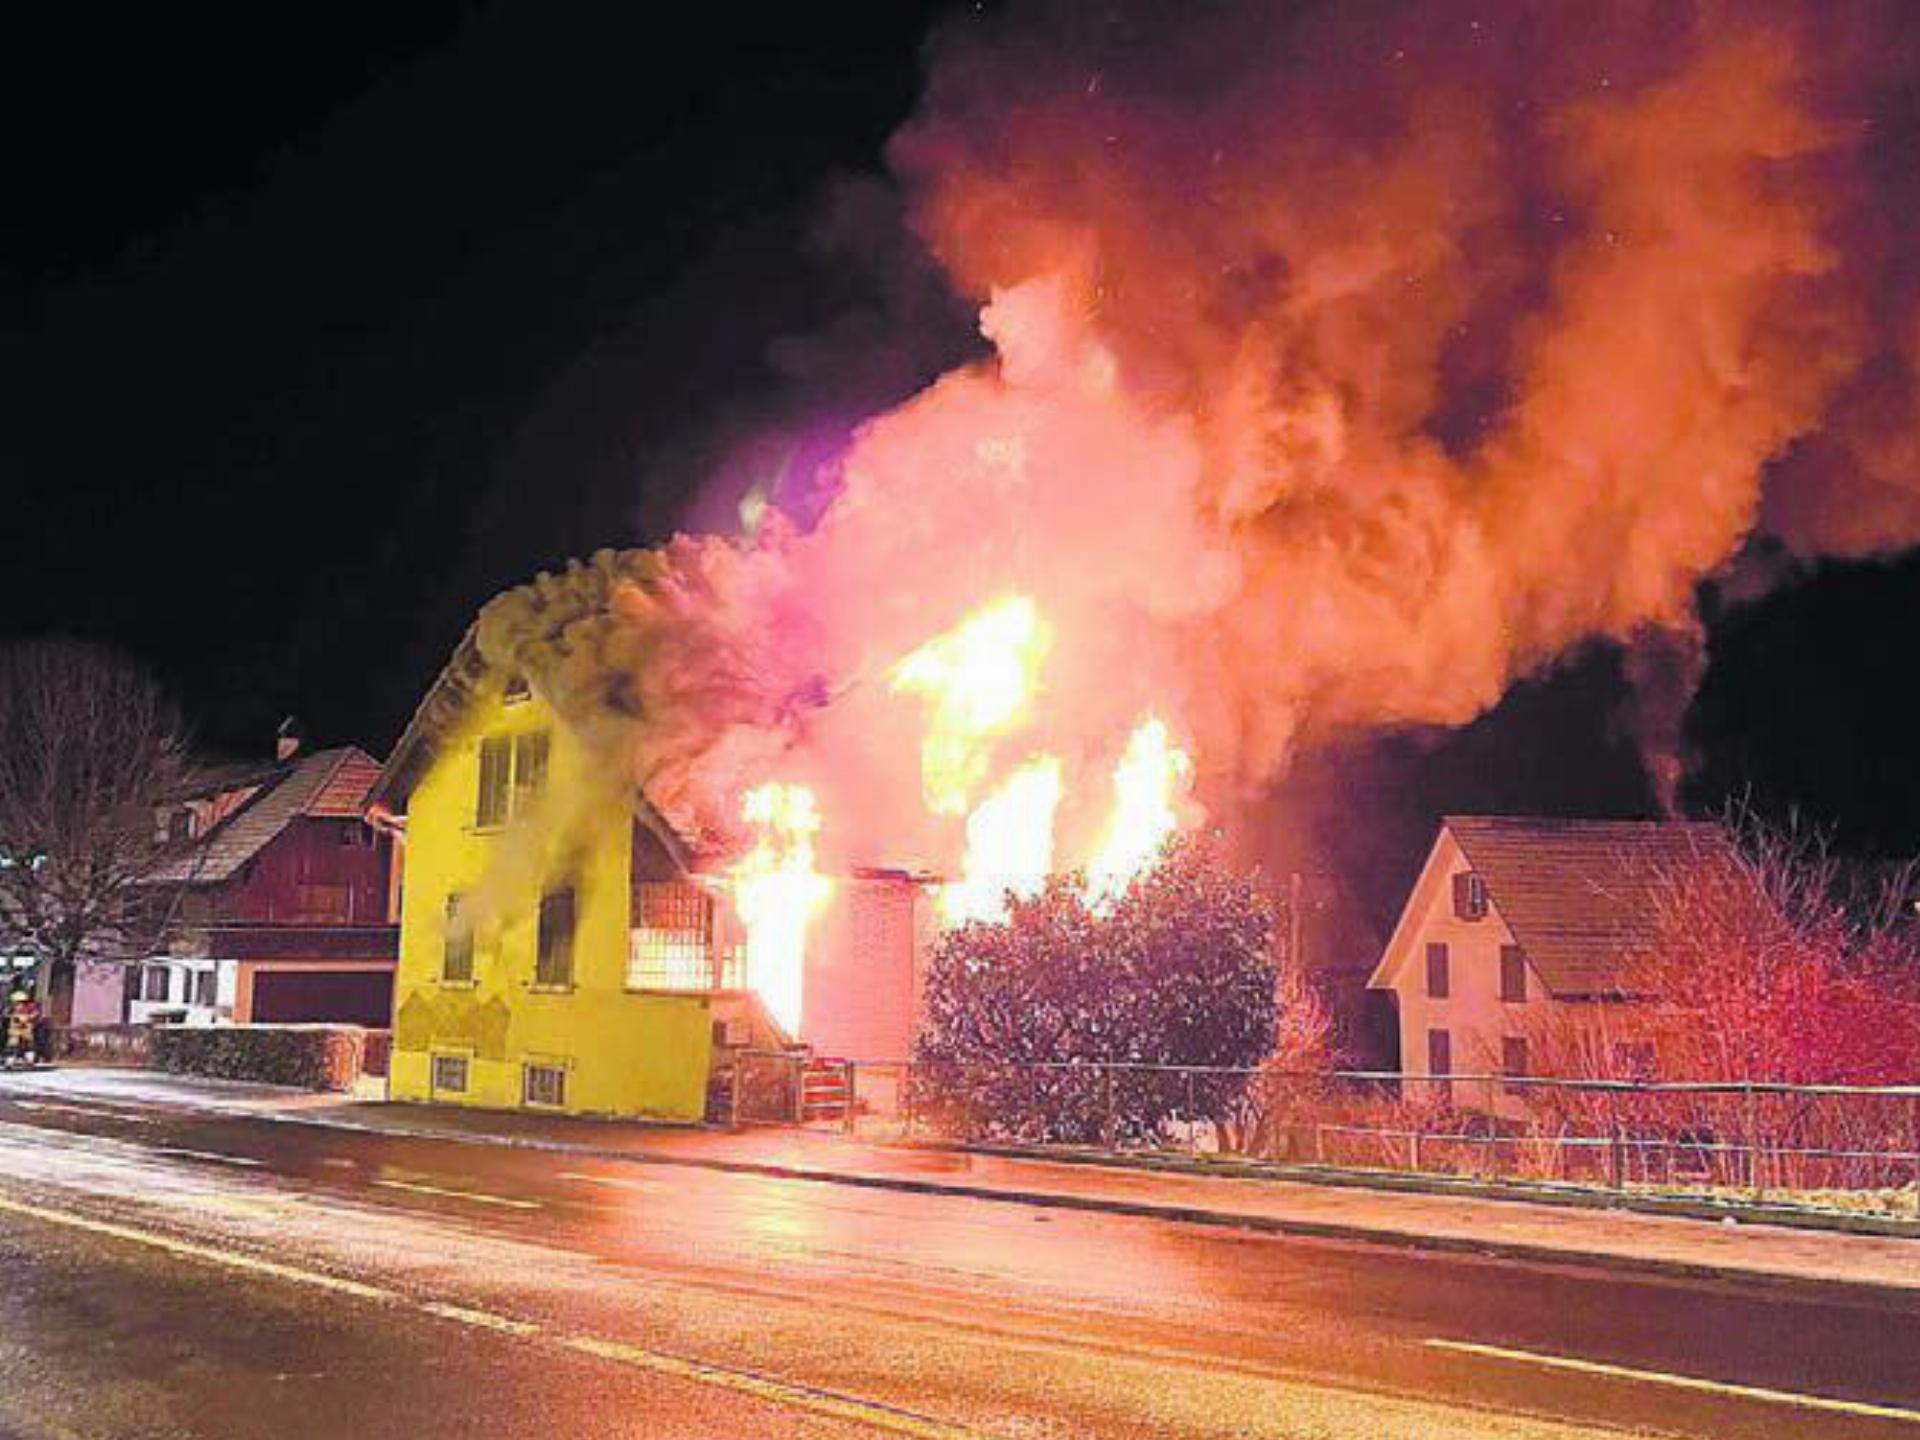 Das alte Haus brannte lichterloh, trotz Grosseinsatz der Feuerwehr war es nicht mehr zu retten. Im Innern machten die Rettungskräfte einen traurigen Fund. Bild: pz